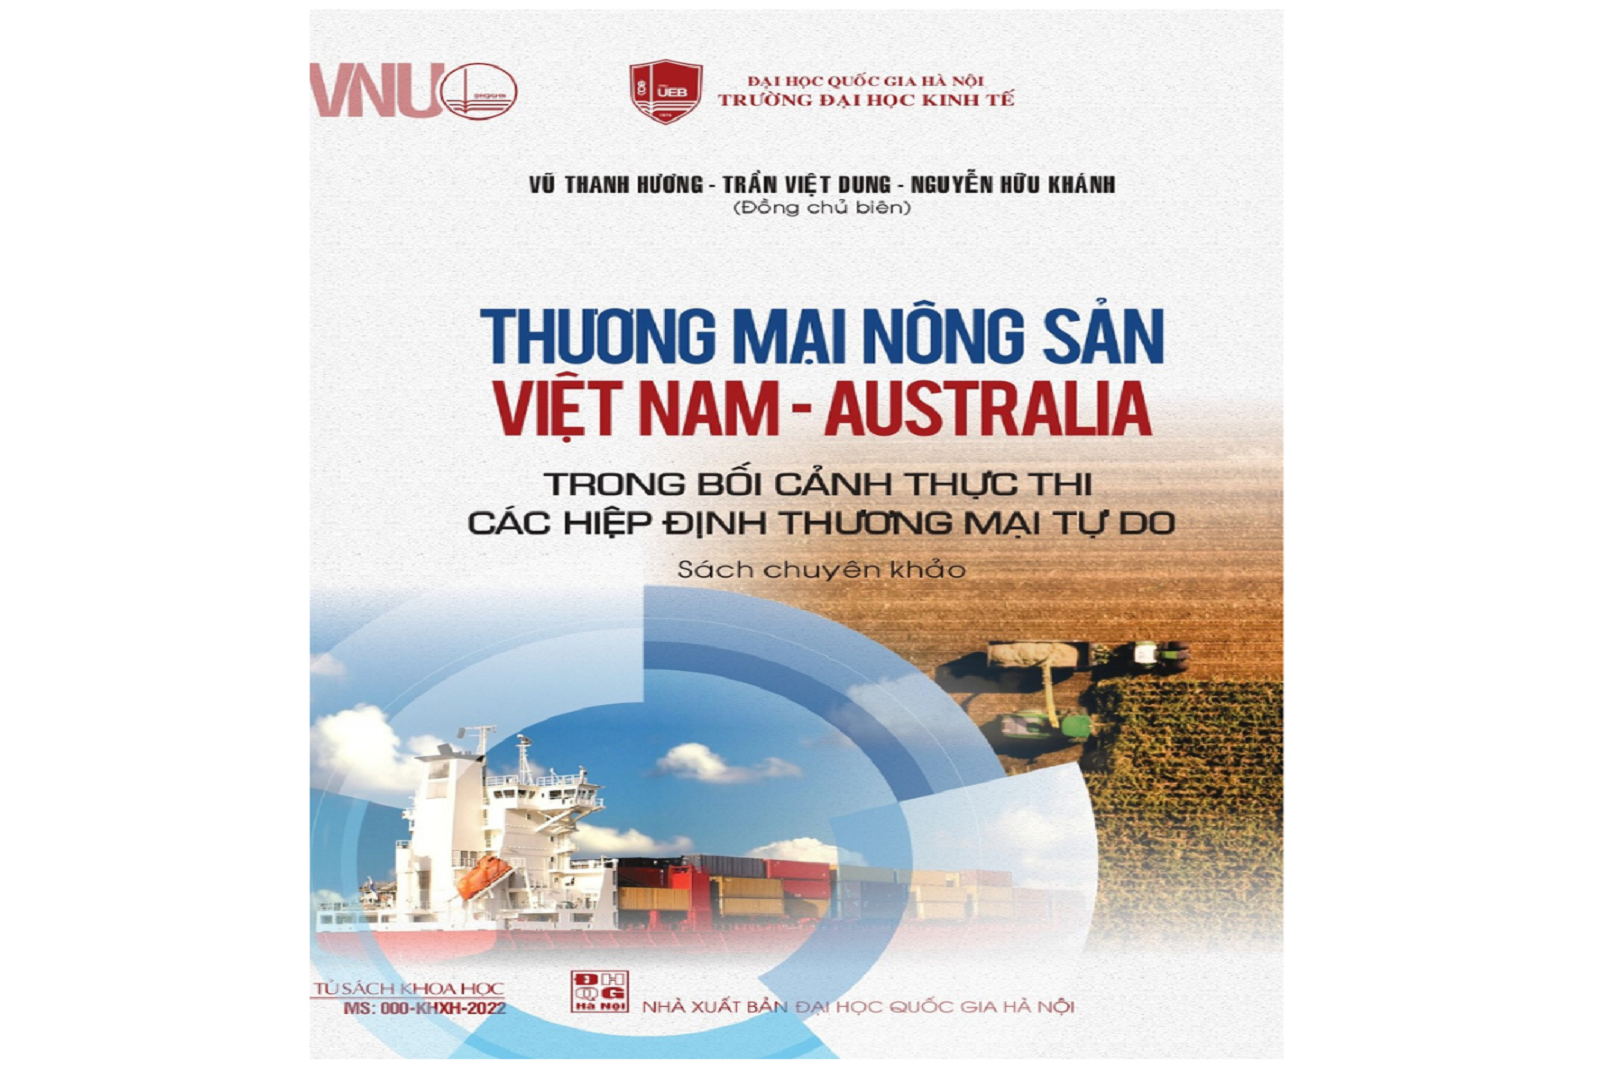 Thương mại nông sản Việt Nam - Australia trong bối cảnh thực thi các Hiệp định thương mại tự do 